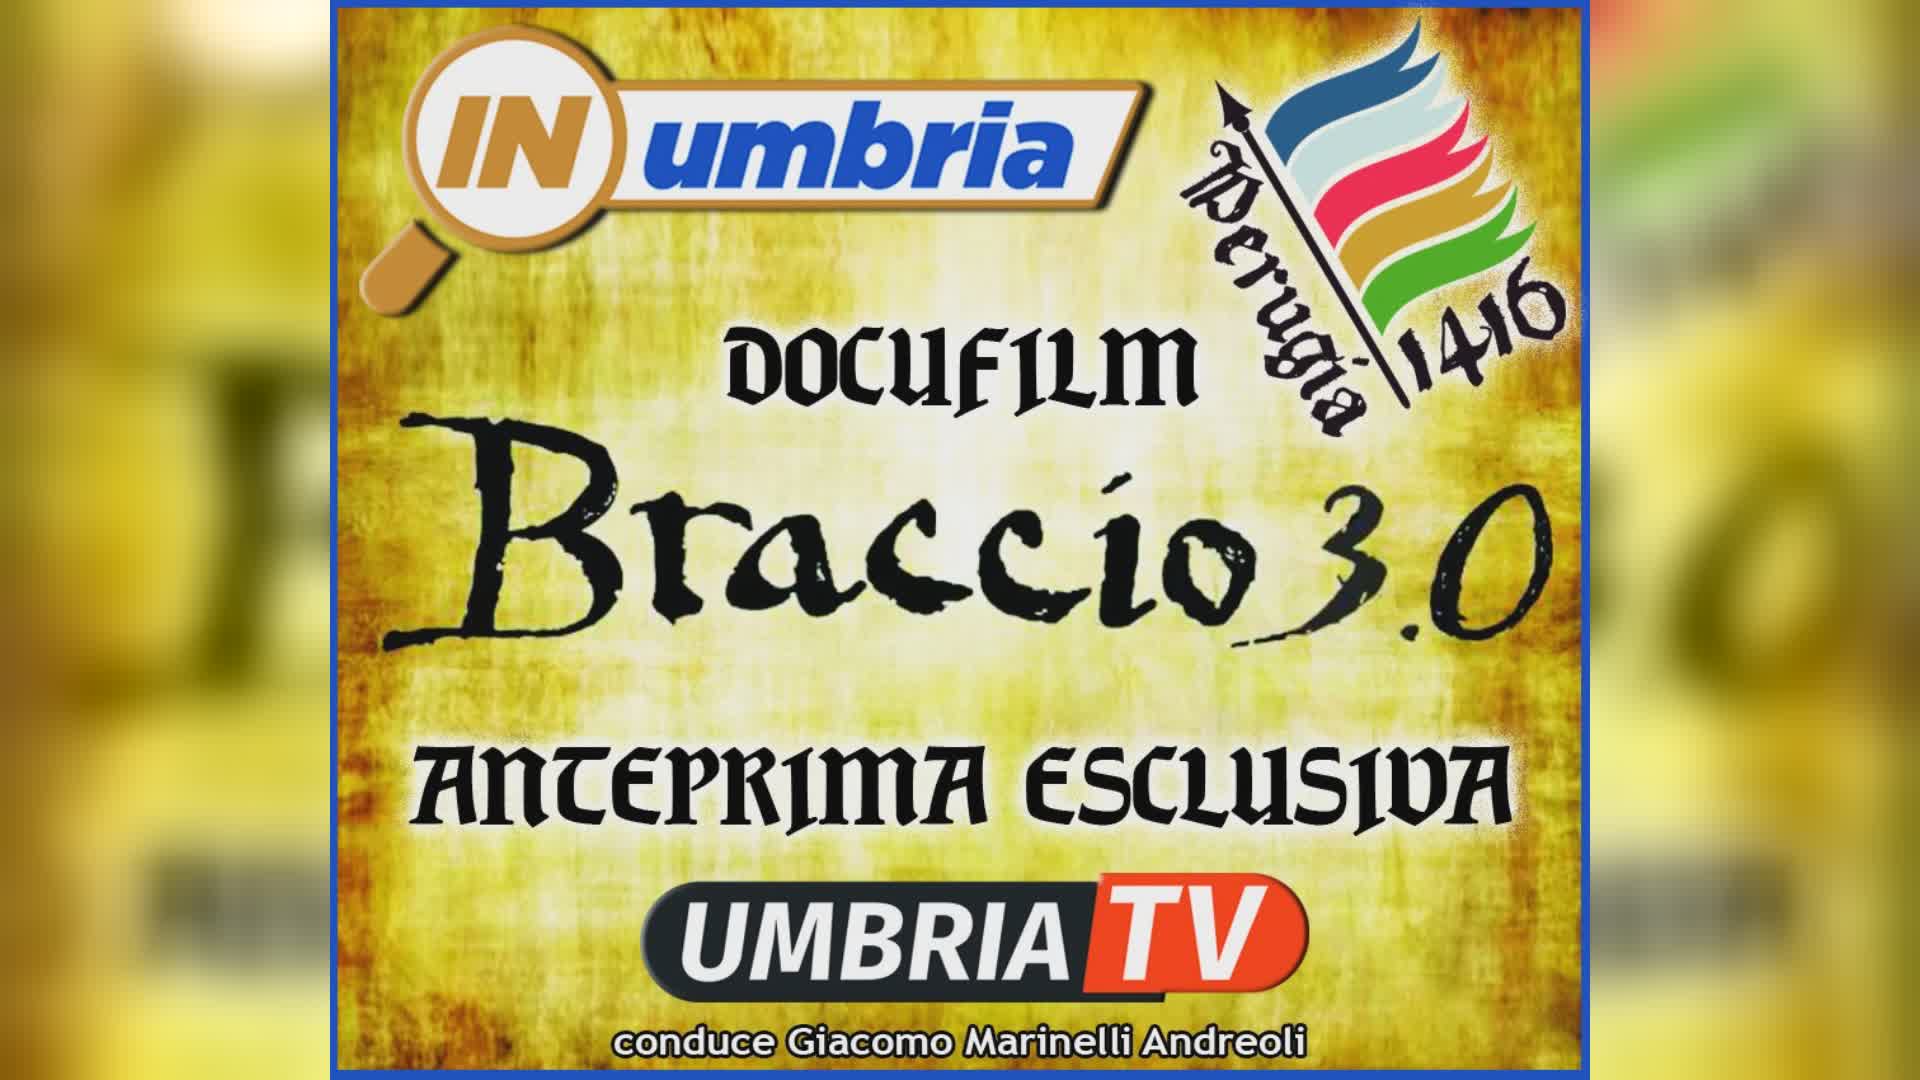 Su UmbriaTV torna InUmbria con anteprima docufilm ’Braccio 3.0’